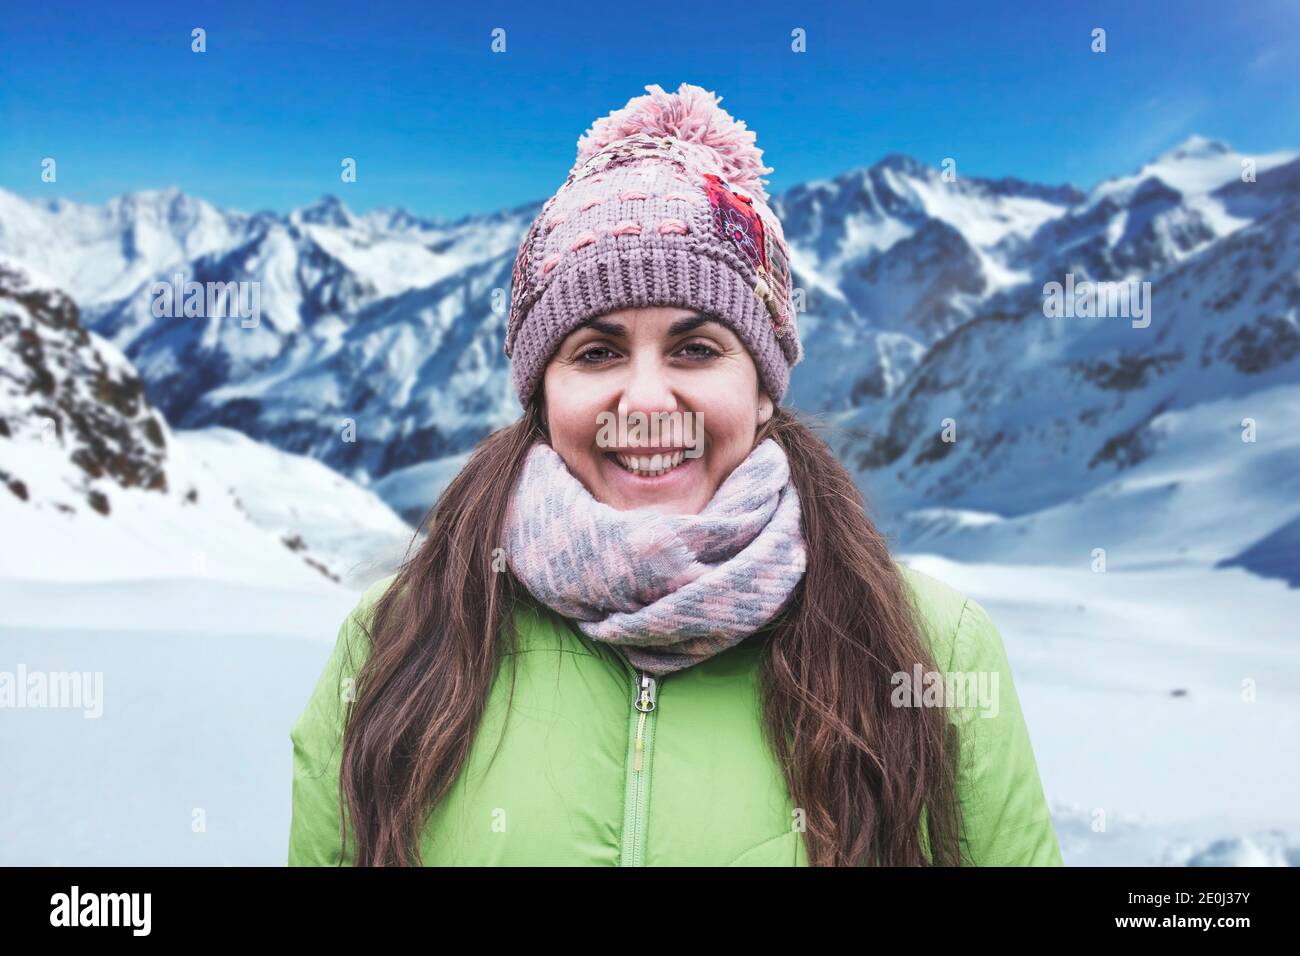 Mujer joven retrato de invierno con ropa cálida contra la montaña nevada. Actividad deportiva en la naturaleza y espacio vacío. Foto de stock